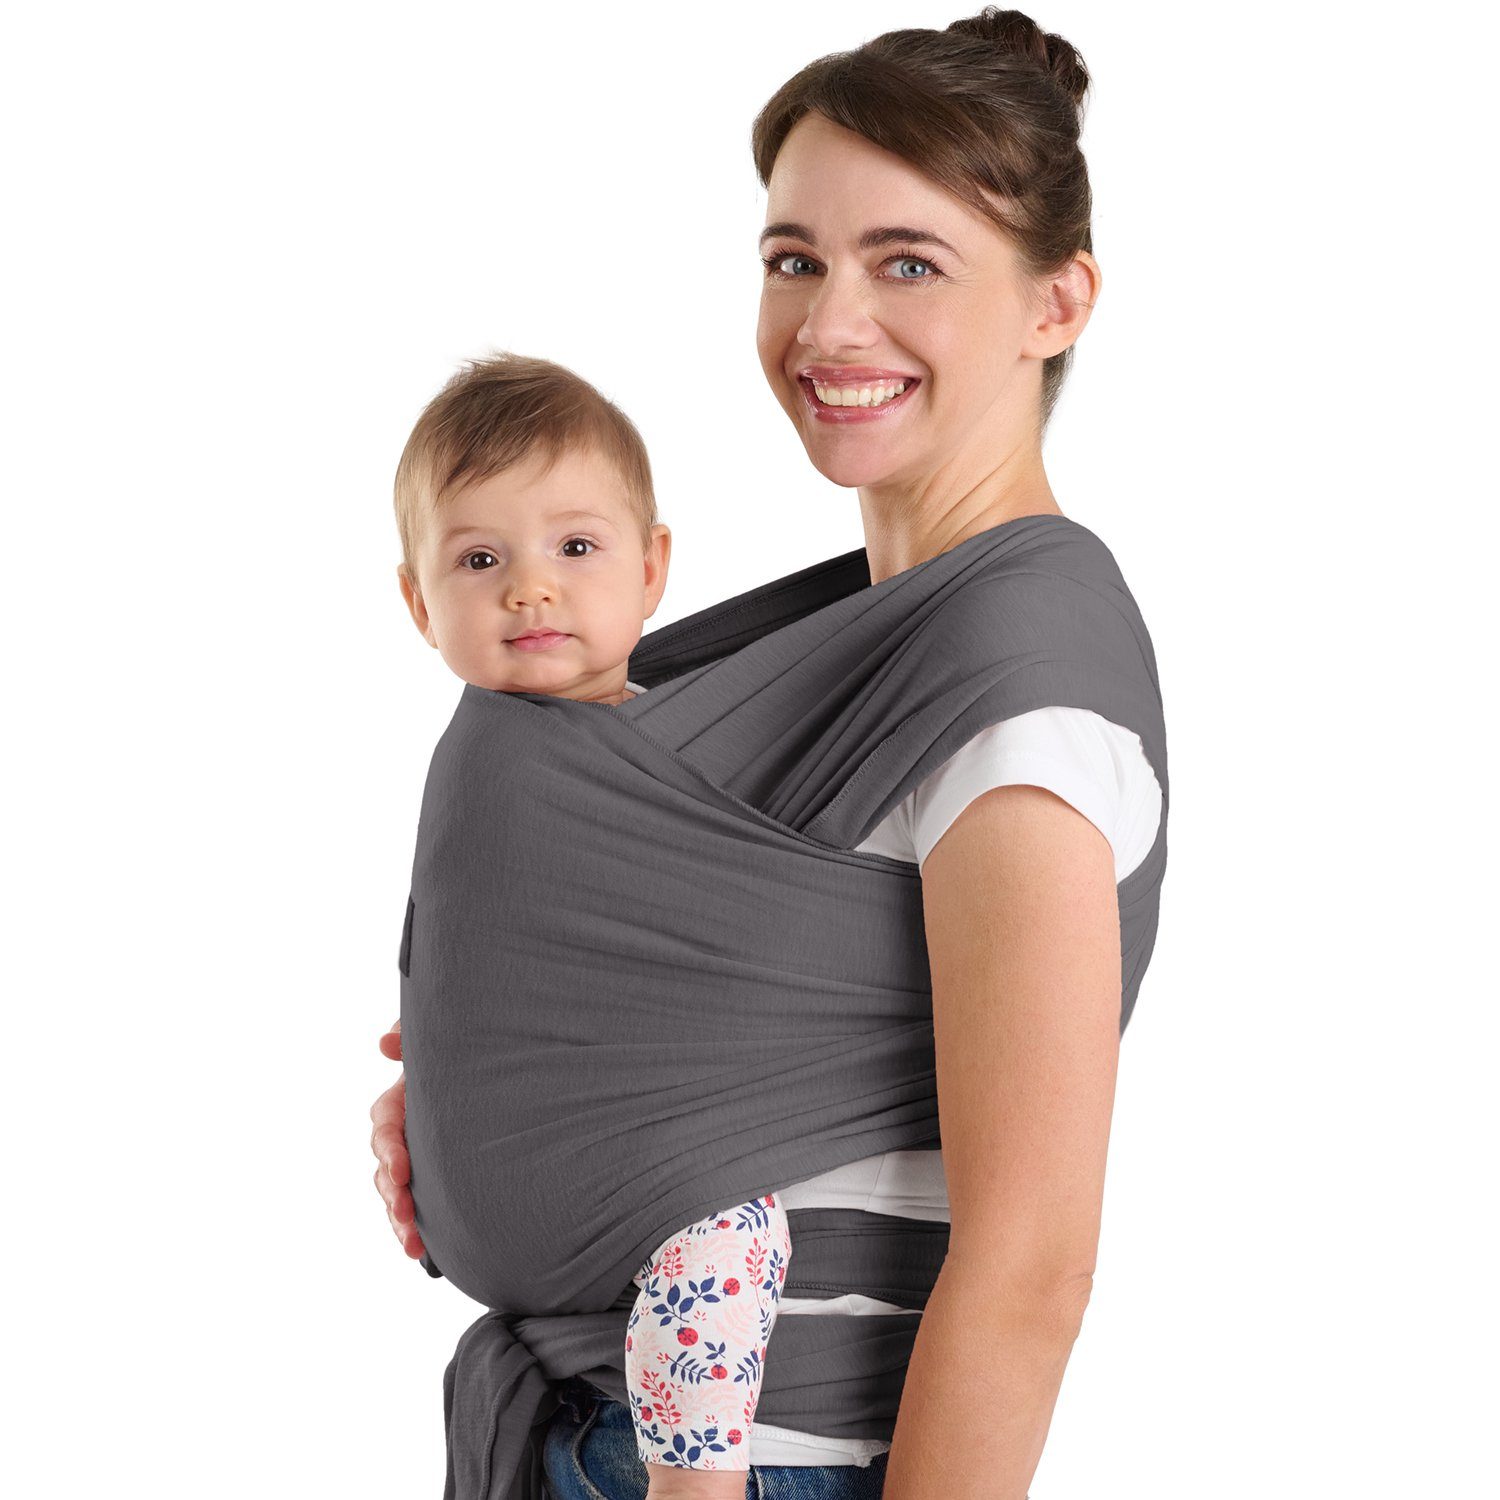 Laleni Tragetuch Babytragetuch elastisch - weiche Neugeborene bis für Bio-Baumwolle, 100% Grau 16kg